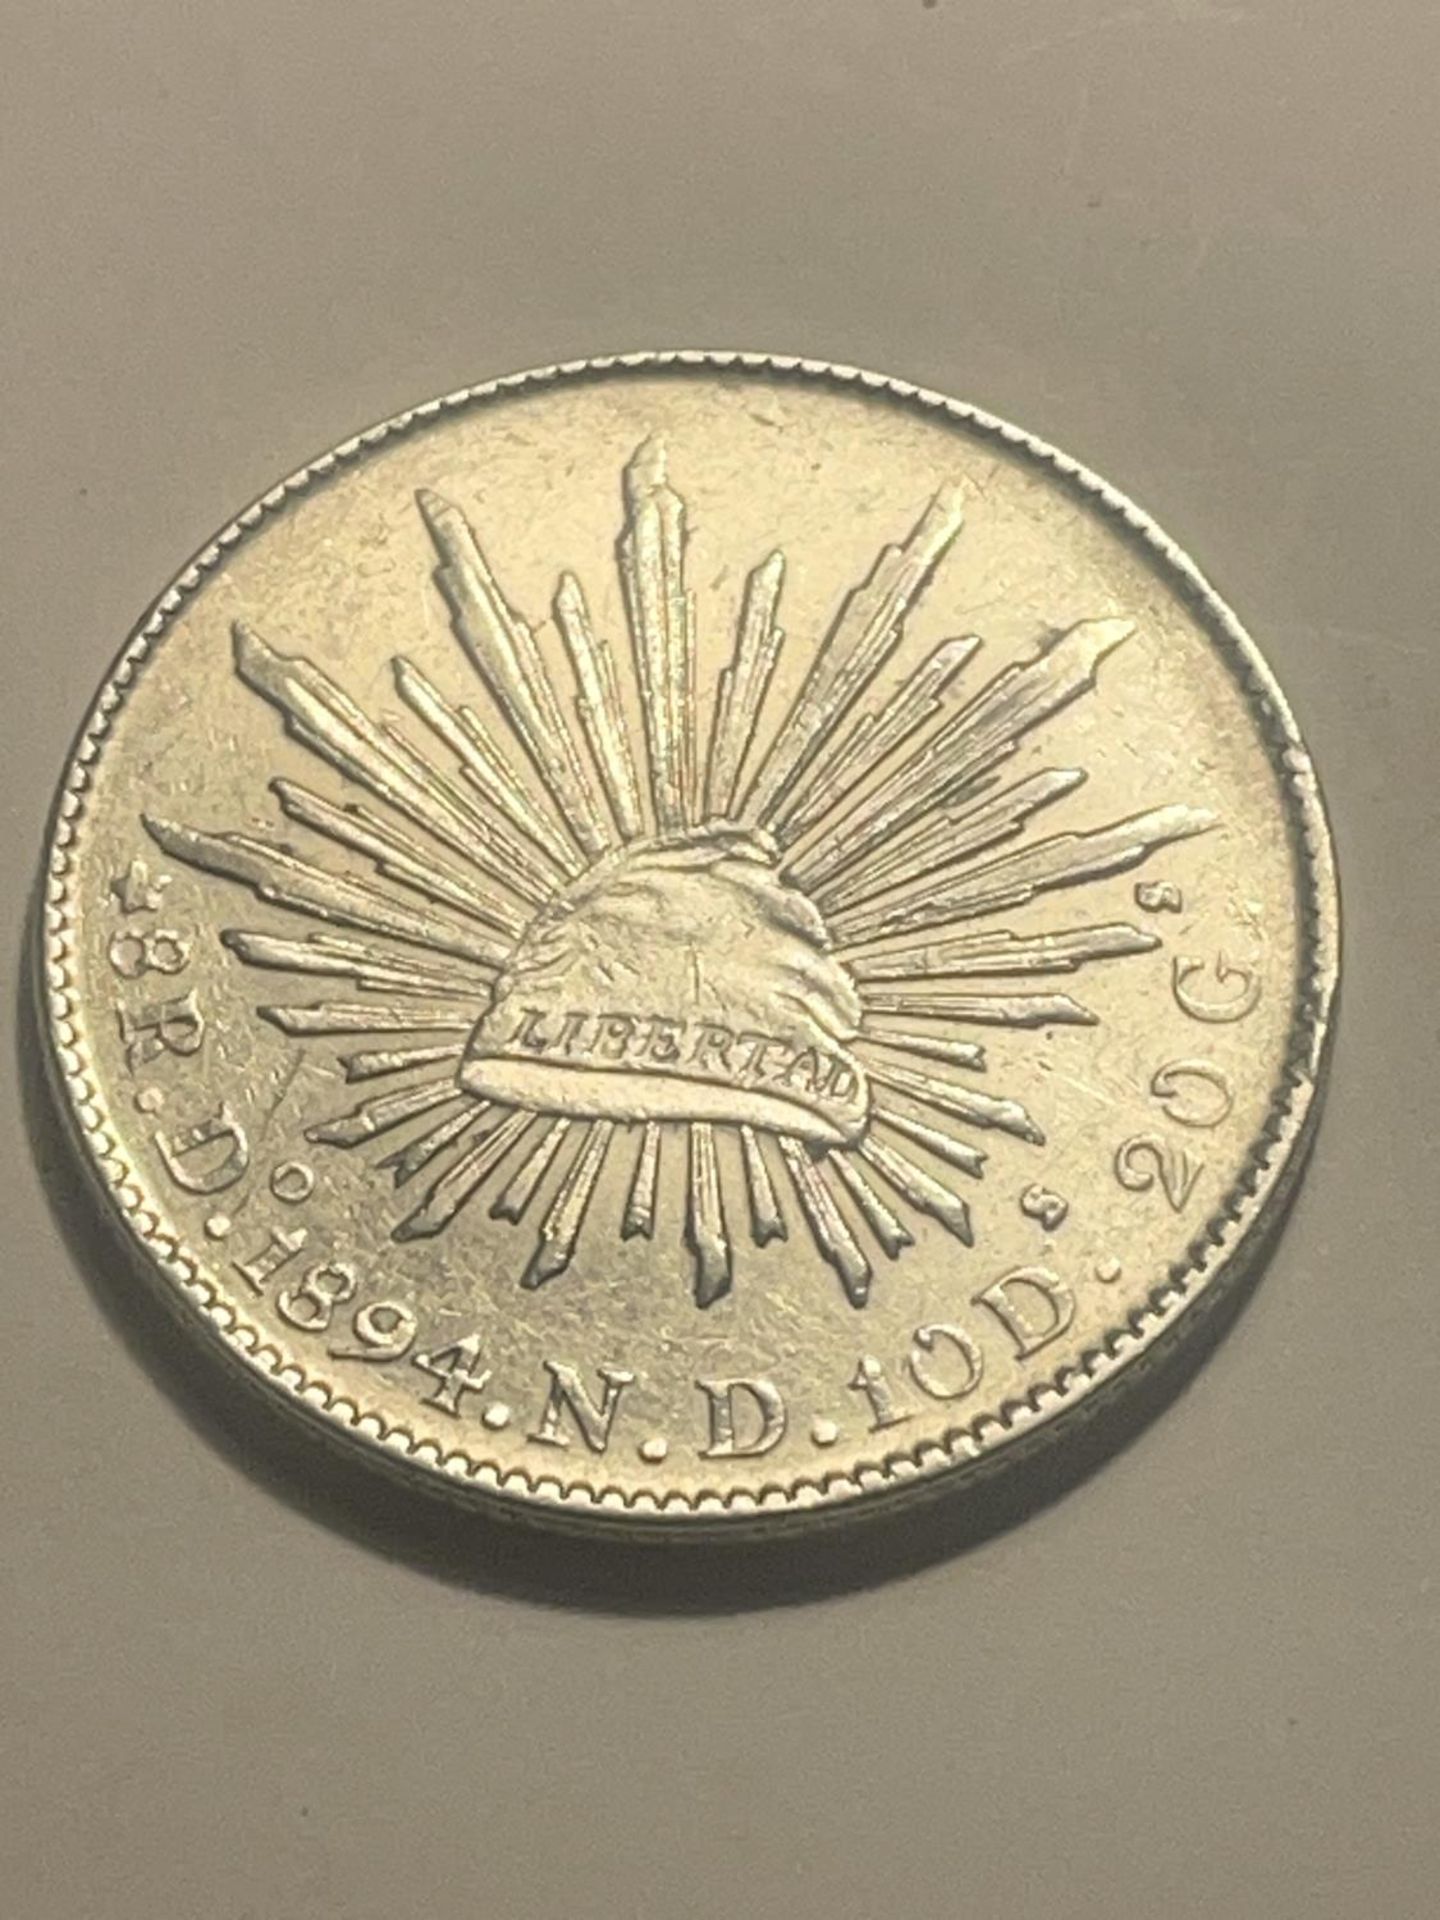 A MEXICAN 1894 SILVER COIN